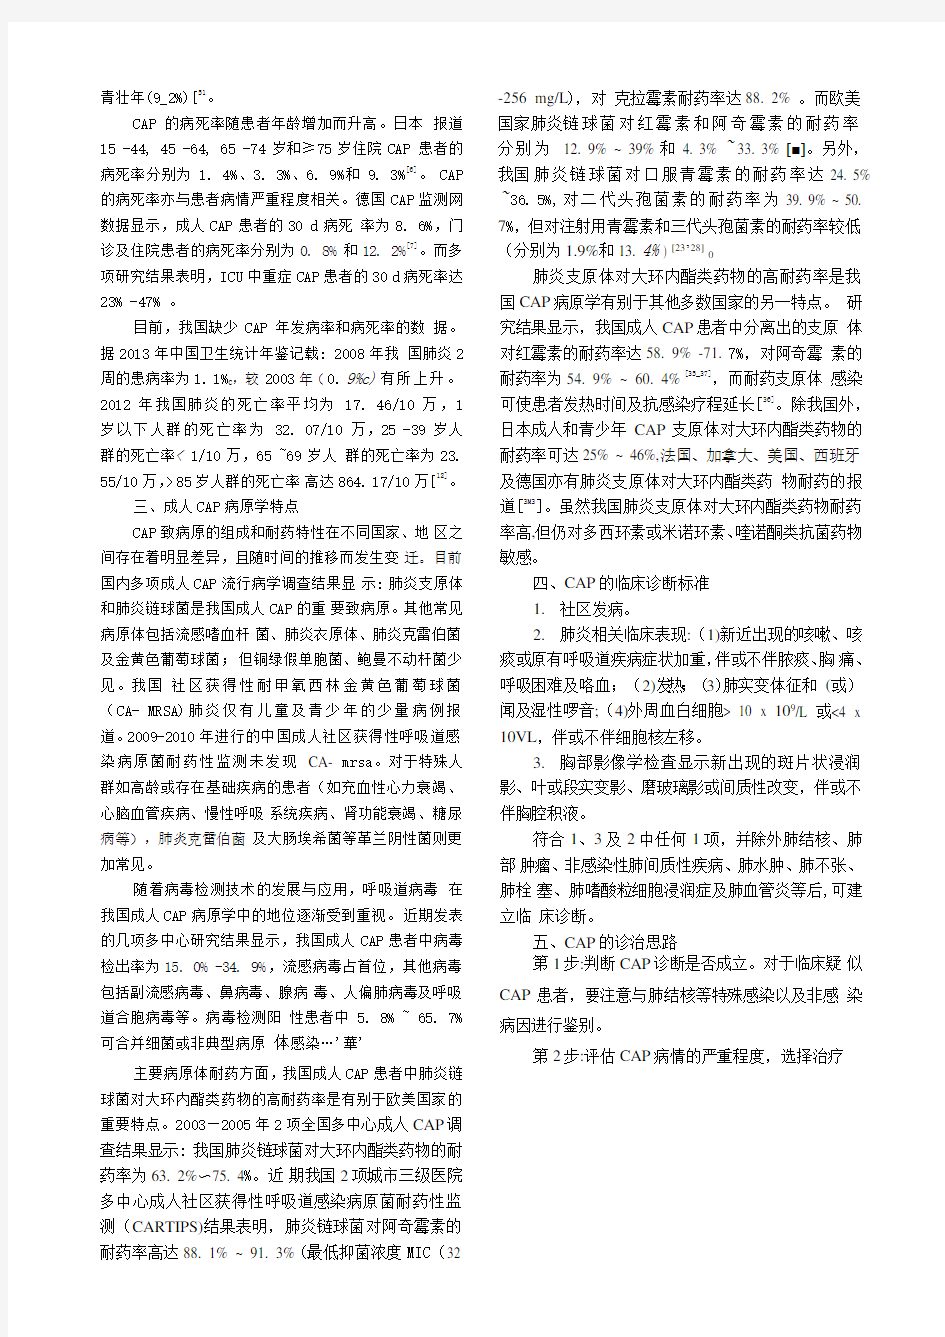 中国成人社区获得性肺炎诊断和治疗指南(2016年版)